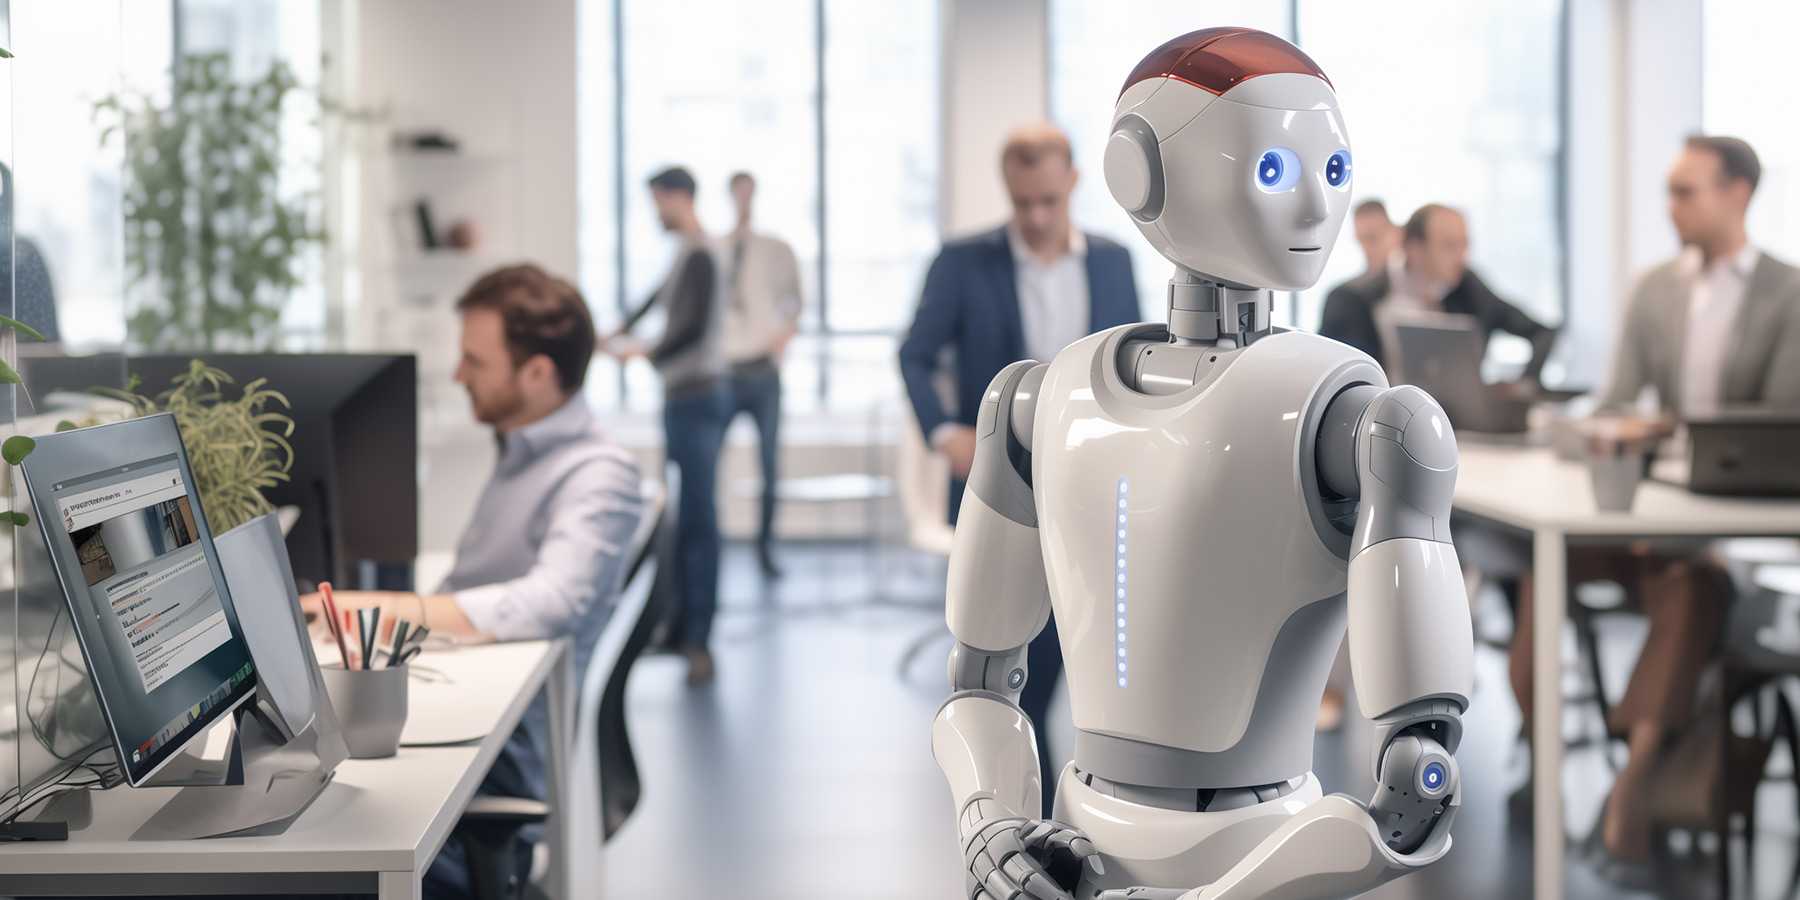 Künstliche Intelligenz – im Bild ein Roboter, der mit Menschen zusammenarbeitet, gilt als Schlüsseltechnologie. Neuste KOF-Forschung zeigt, dass KI oft in relativ geschlossenen Gruppen eingeführt wird. (Bild erzeugt mit KI)